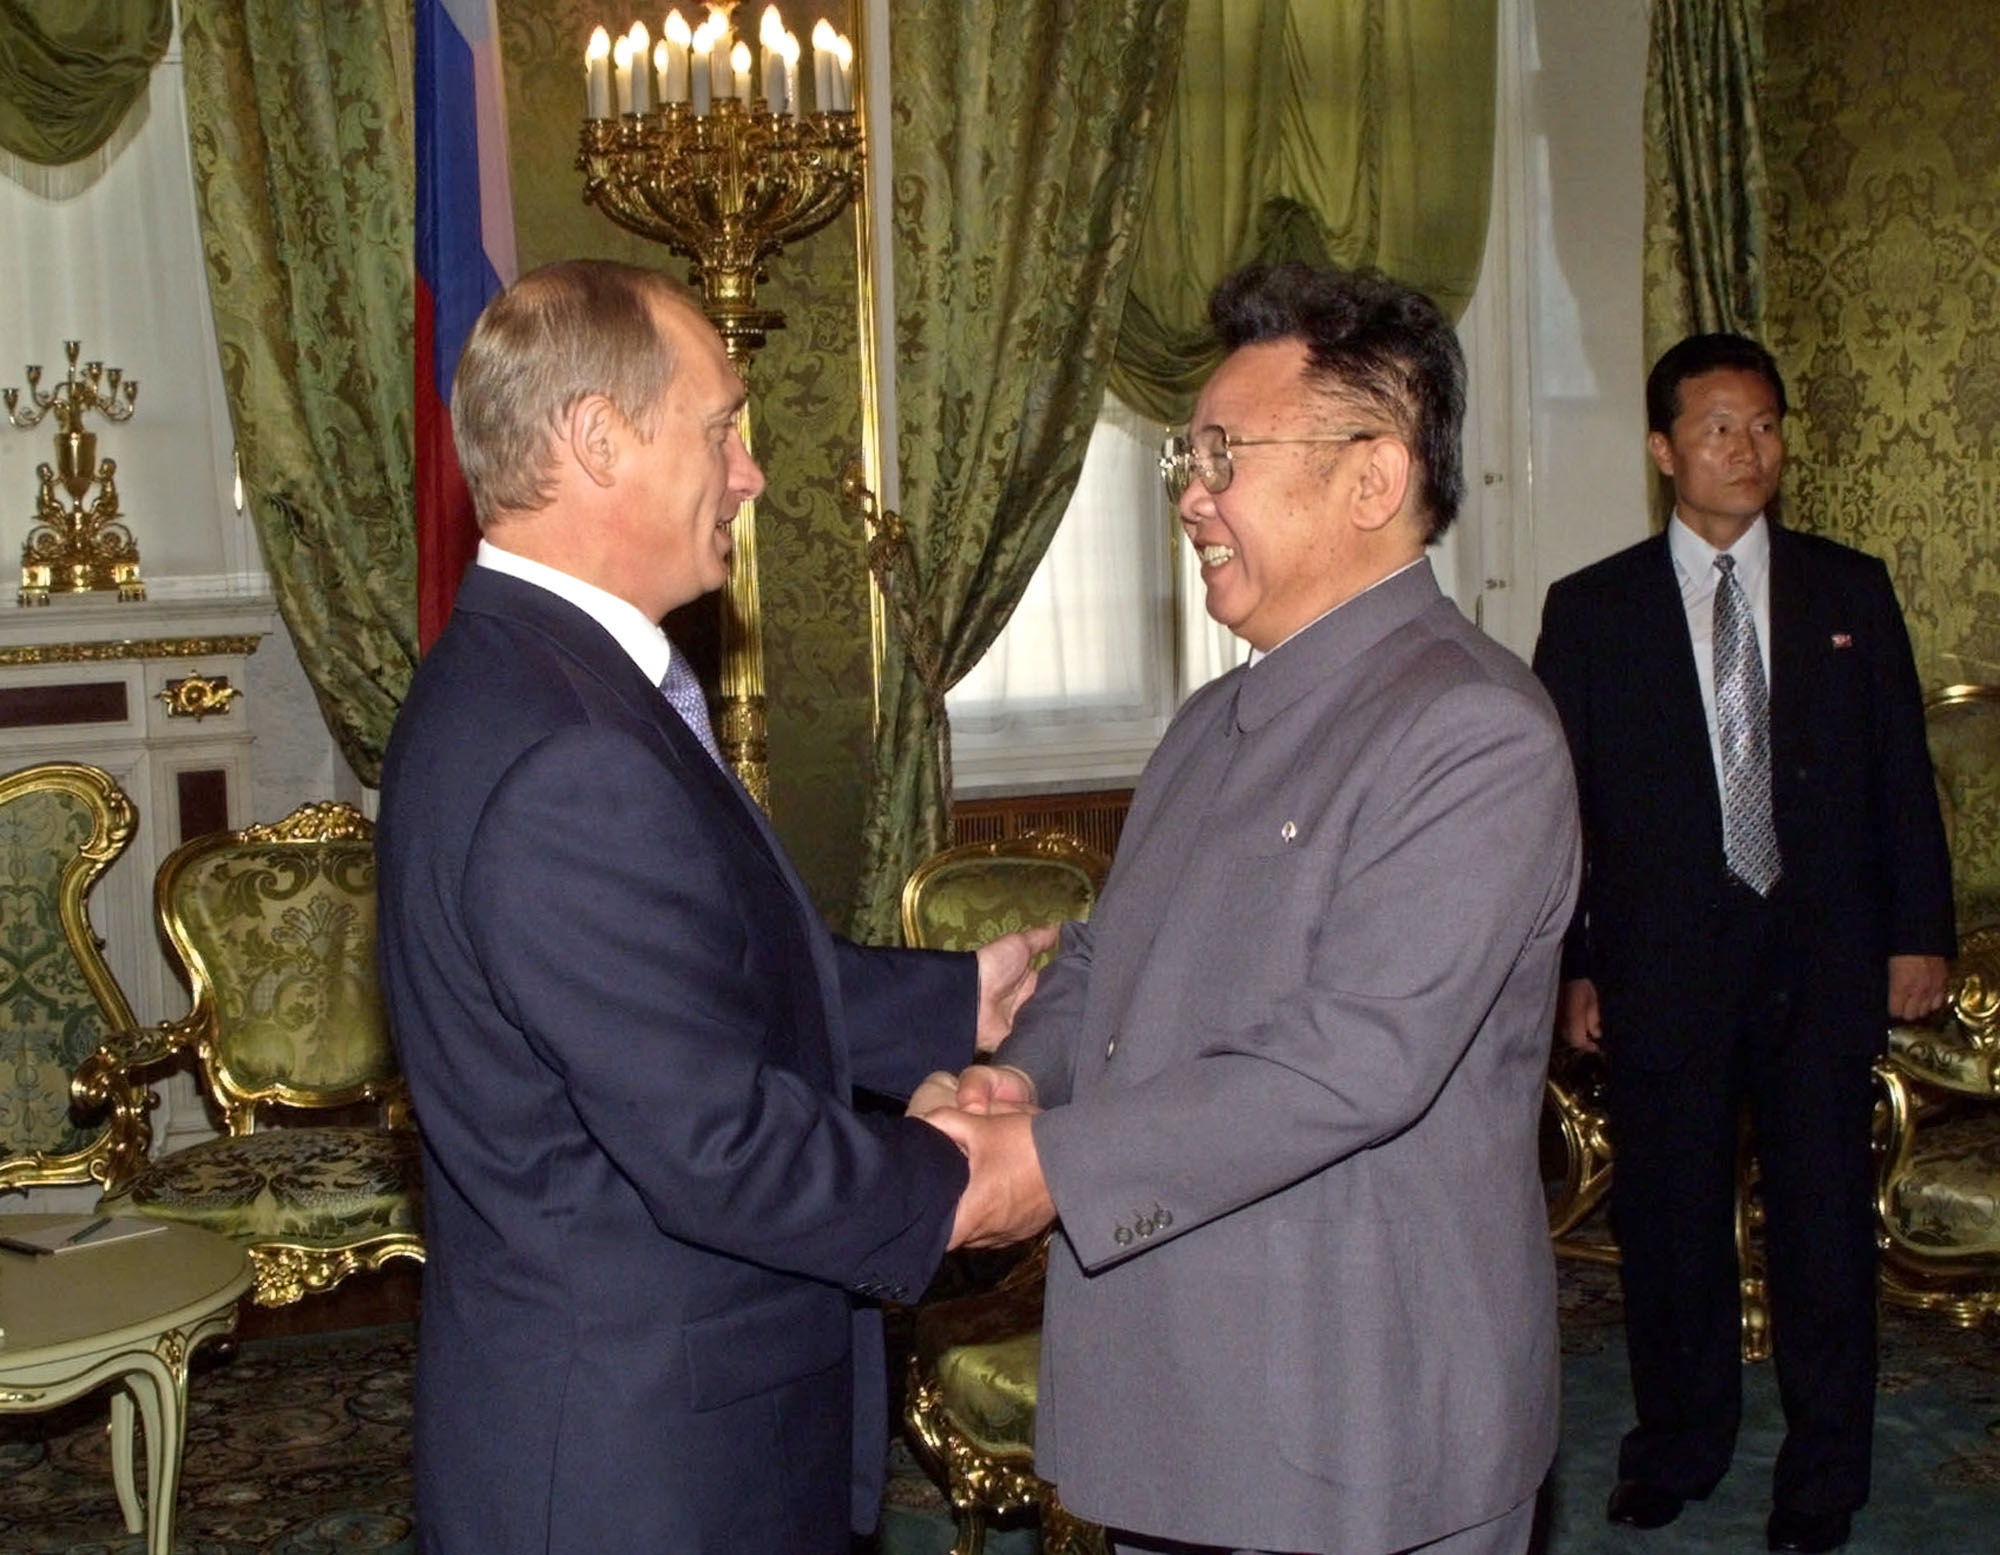 블라디미르 푸틴 러시아 대통령(왼쪽)이 2001년 8월 4일 토요일 모스크바에서 열린 회담에서 북한 지도자 김정일과 악수하고 있다. 푸틴과 김정일은 토요일 크렘린에서 양국의 경제 및 기타 관계를 재개할 것으로 예상되는 회담을 시작했다. 서울신문DB